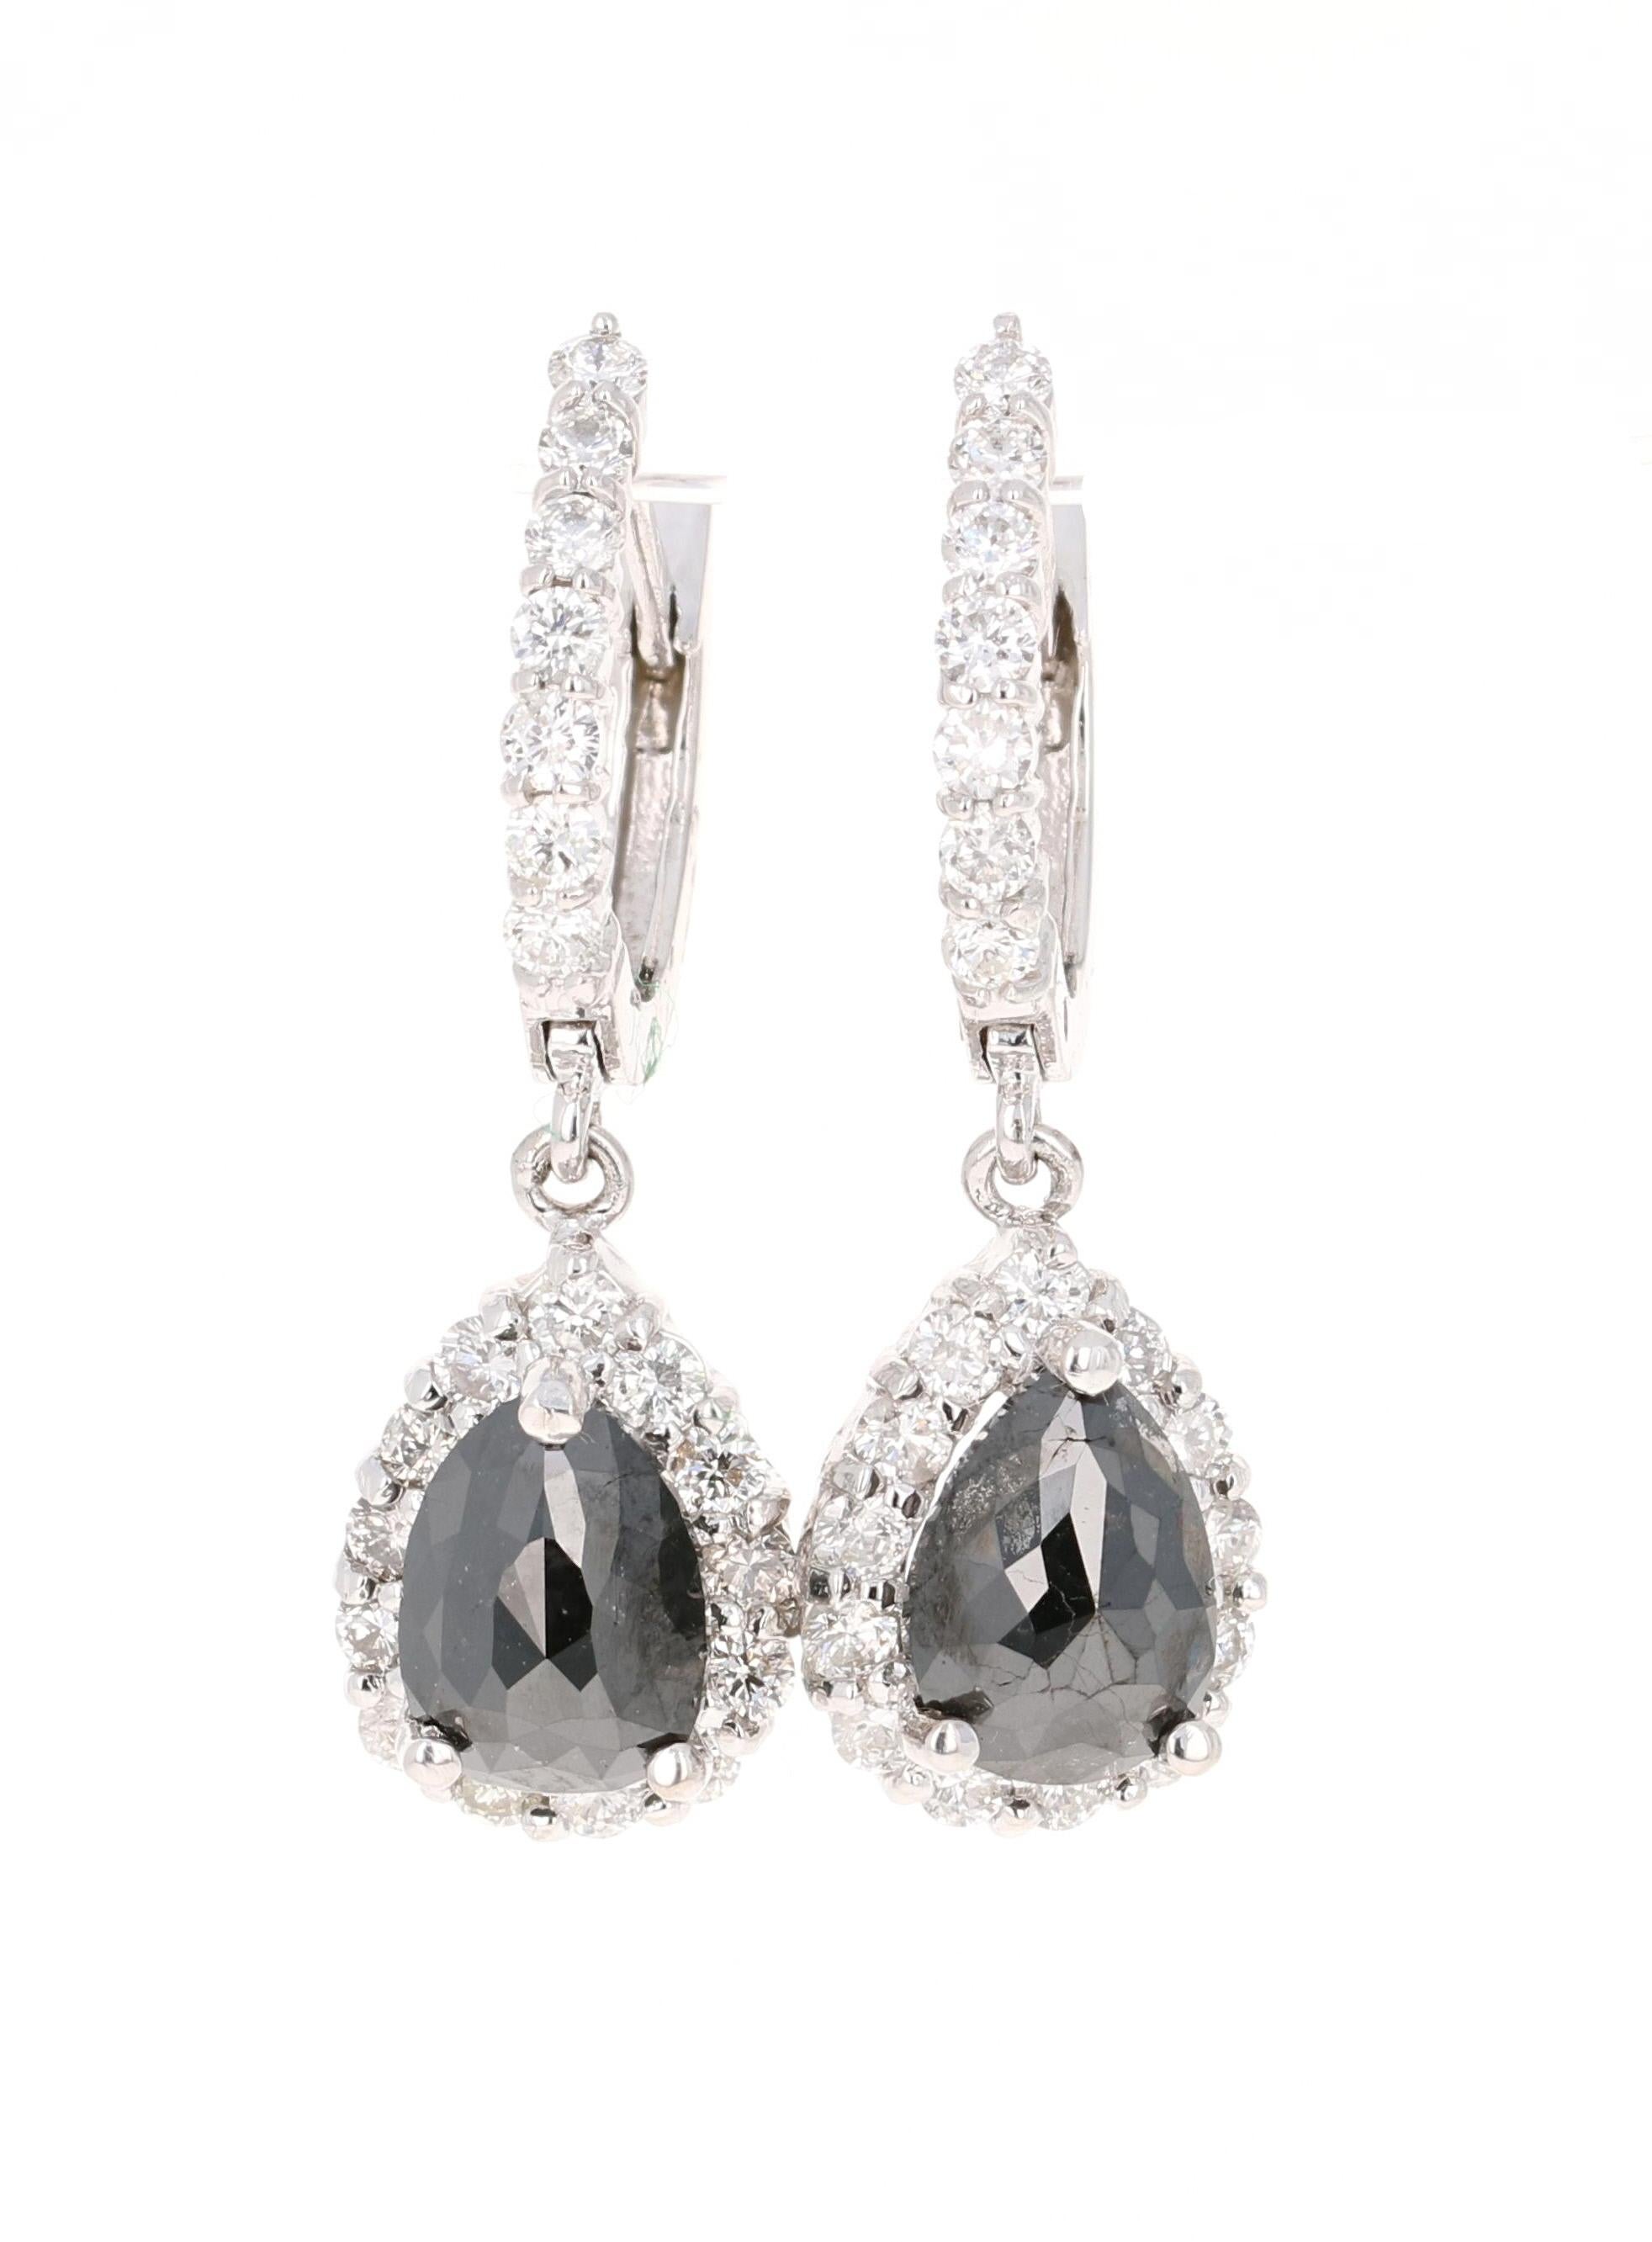 Diese Schönheiten haben 2 schwarze Diamanten im Birnenschliff mit einem Gewicht von 2,54 Karat und 40 Diamanten im Rundschliff mit einem Gewicht von 1,21 Karat. Das Gesamtkaratgewicht der Ohrringe beträgt 3.75 Karat. Die schwarzen Diamanten im